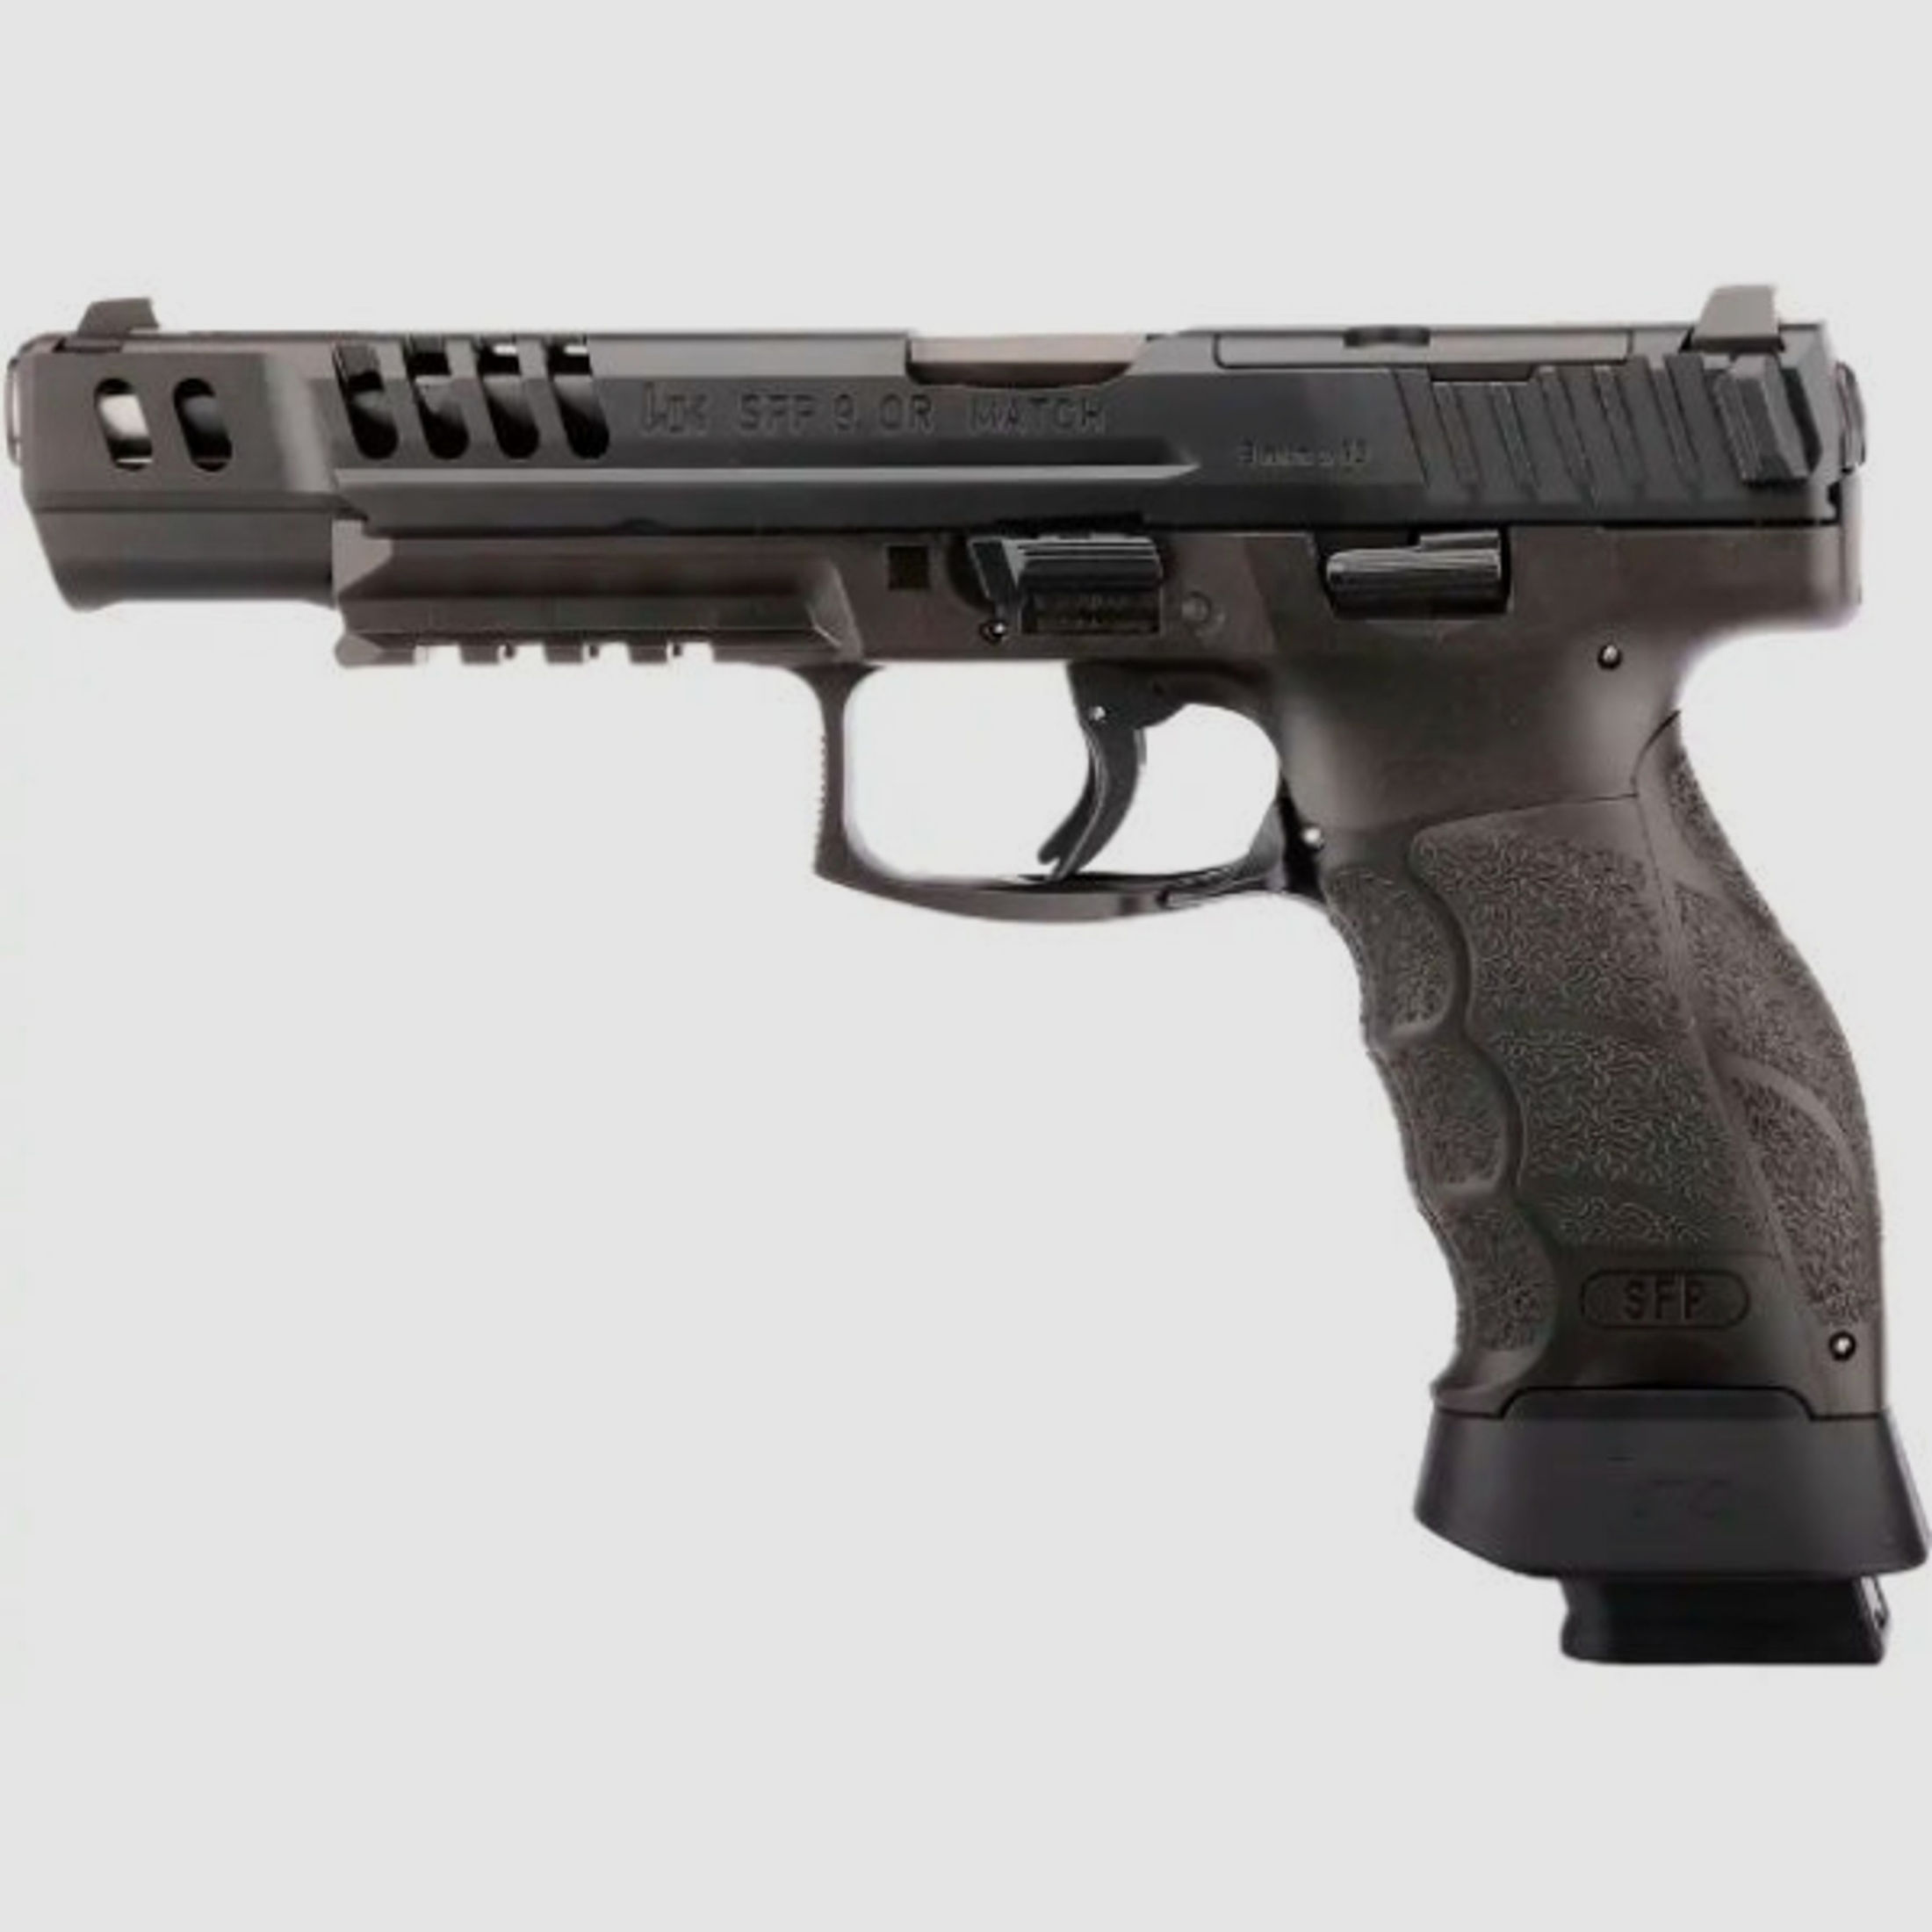 Pistole Heckler & Koch SFP9-OR Match, Kaliber 9 mm Luger